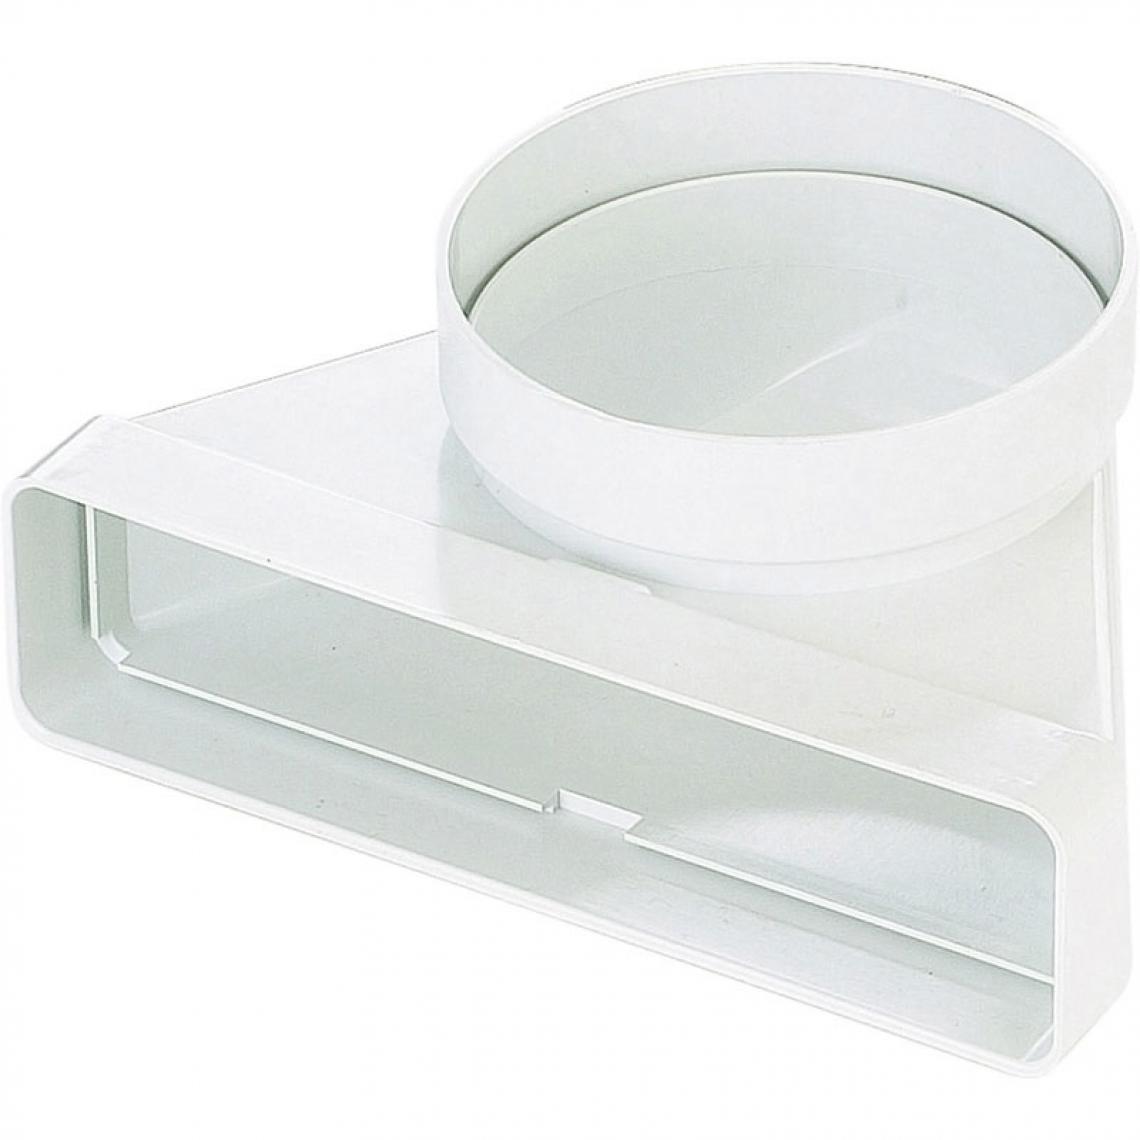 Unelvent - Coude mixte pvc - Décor : Blanc - Section : 55 x 220 mm - Matériau : PVC - UNELVENT - Grille d'aération